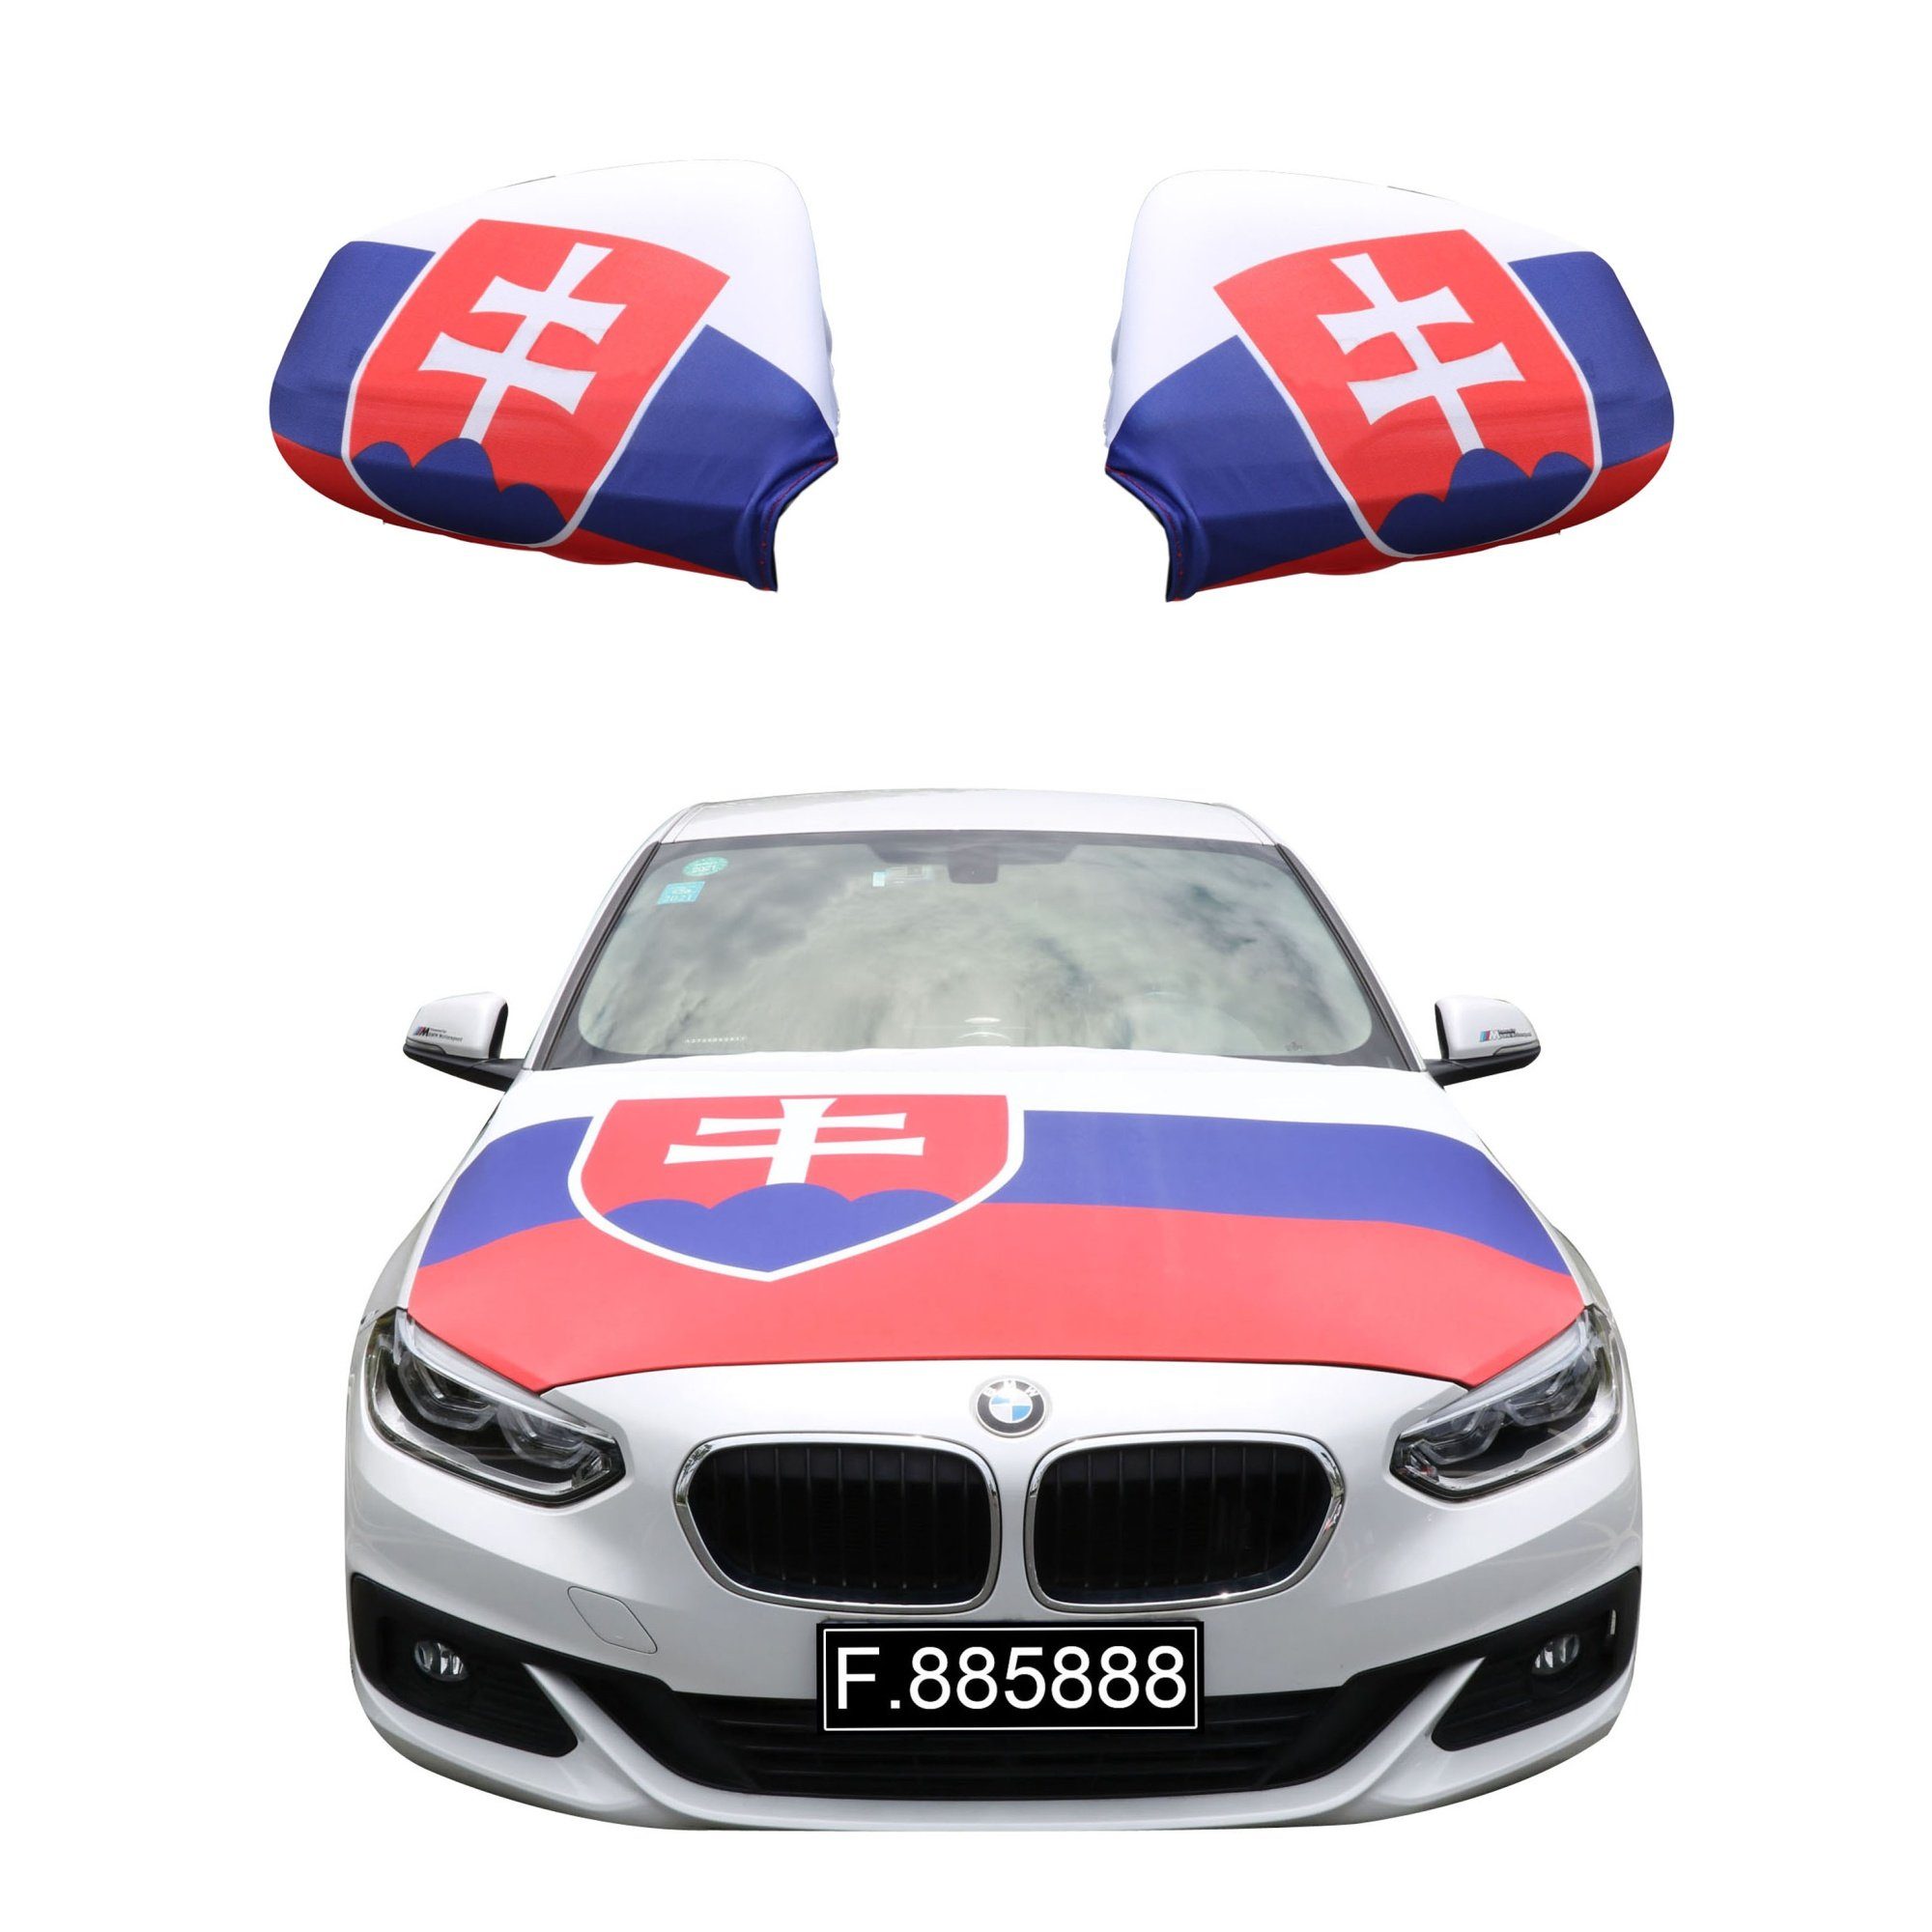 Sonia Originelli Fahne Fanset "Slowakei" Slovakia Fußball Motorhaube Außenspiegel Flagge, für alle gängigen PKW Modelle, Motorhauben Flagge: ca. 115 x 150cm